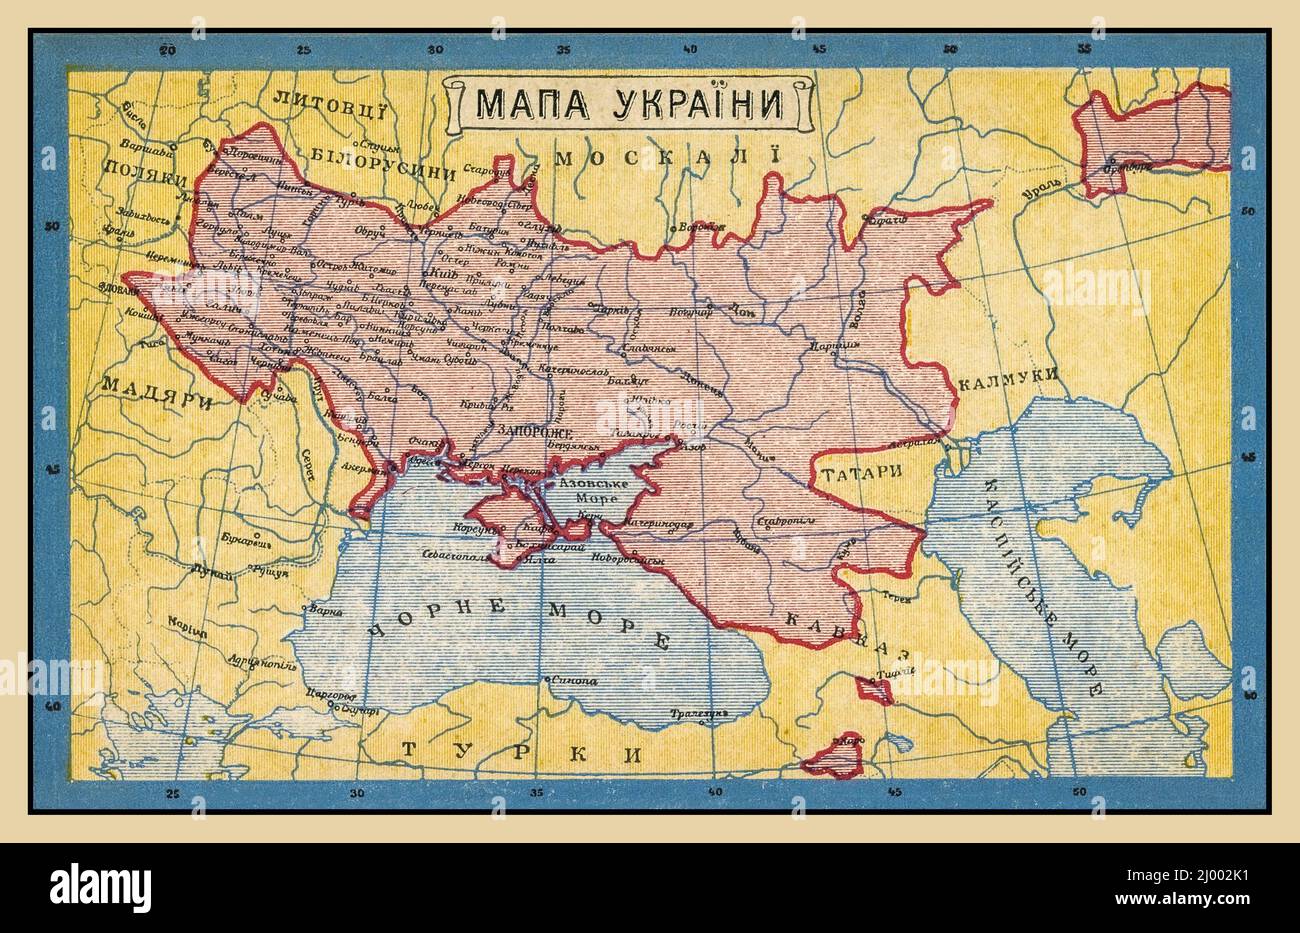 UCRAINA Vintage 1900s Mappa dell'Ucraina Vecchia Ucraina Postcard poster storico (1919) testo nei confini del Paese Ukraniano/Russo in rosso Foto Stock